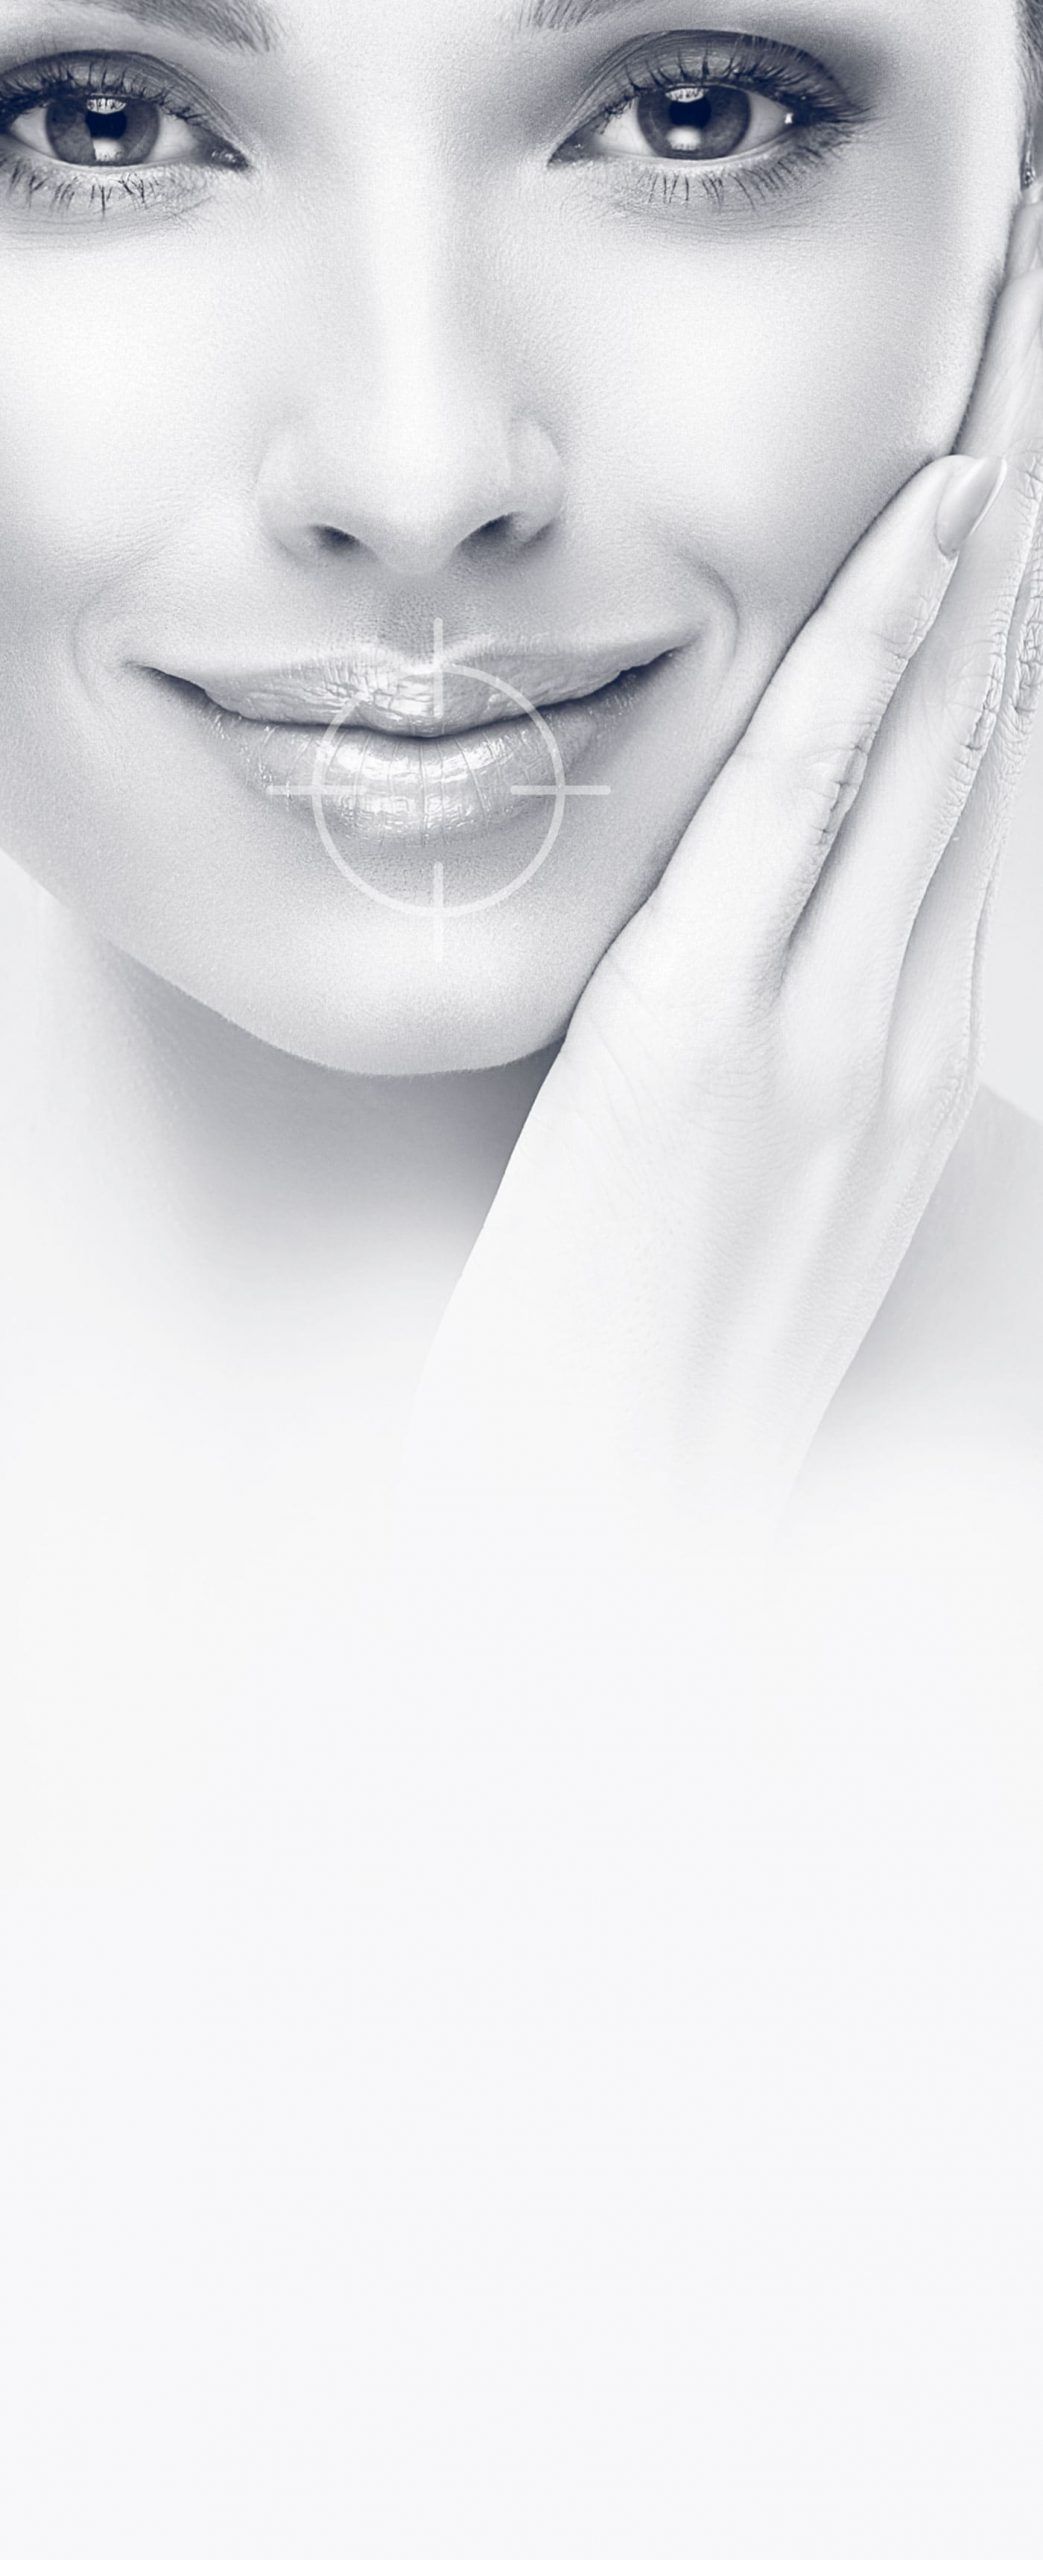 Augmentation des lèvres à Cannes - injections d'acide hyaluronique - Dr Laveaux